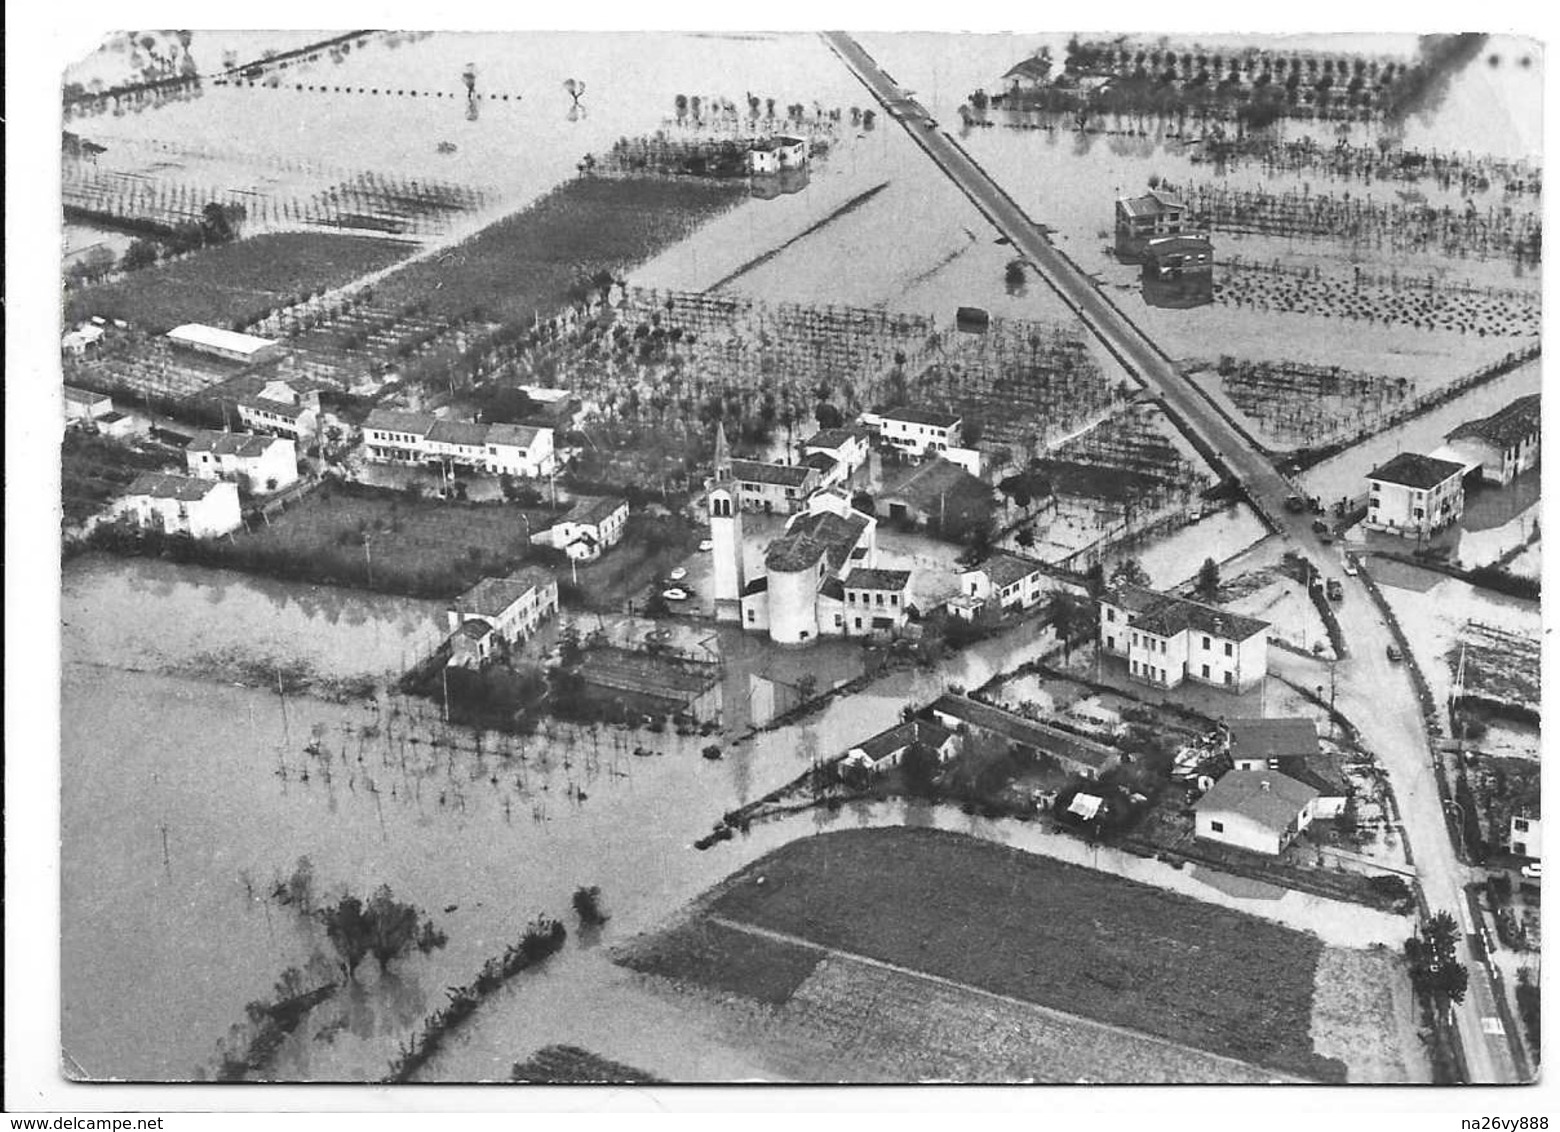 Veduta Dall'alto Di Lasson Di Meolo (Venezia). Alluvione 4 Novembre 1966. - Venezia